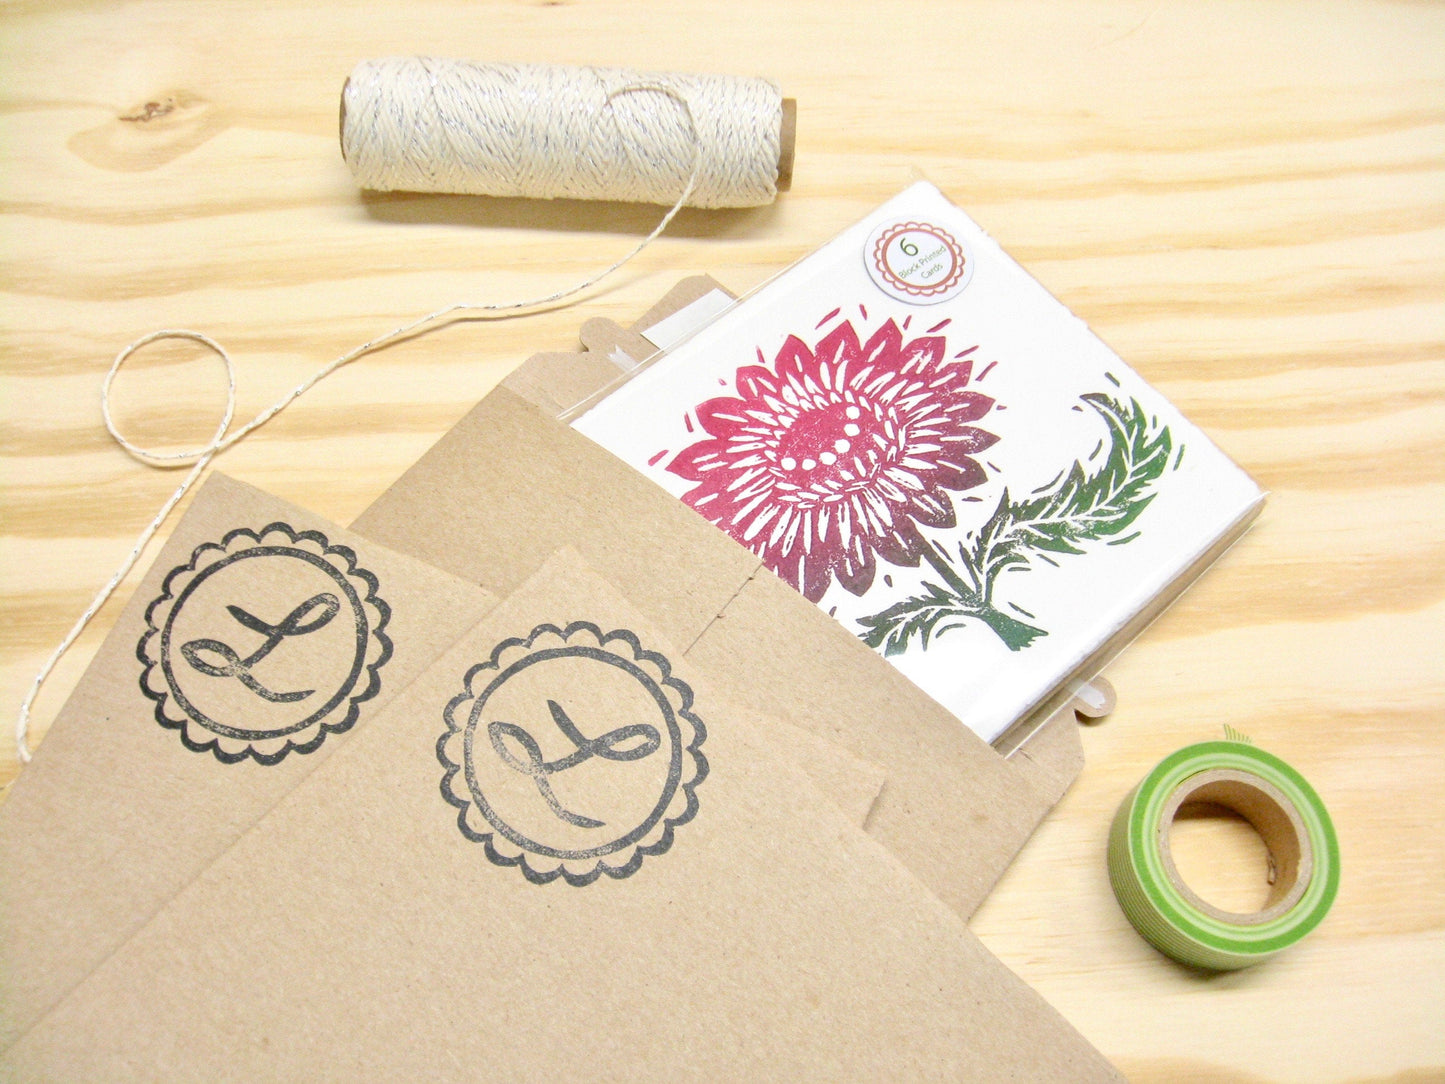 Magenta Flower single card - woodblock printed